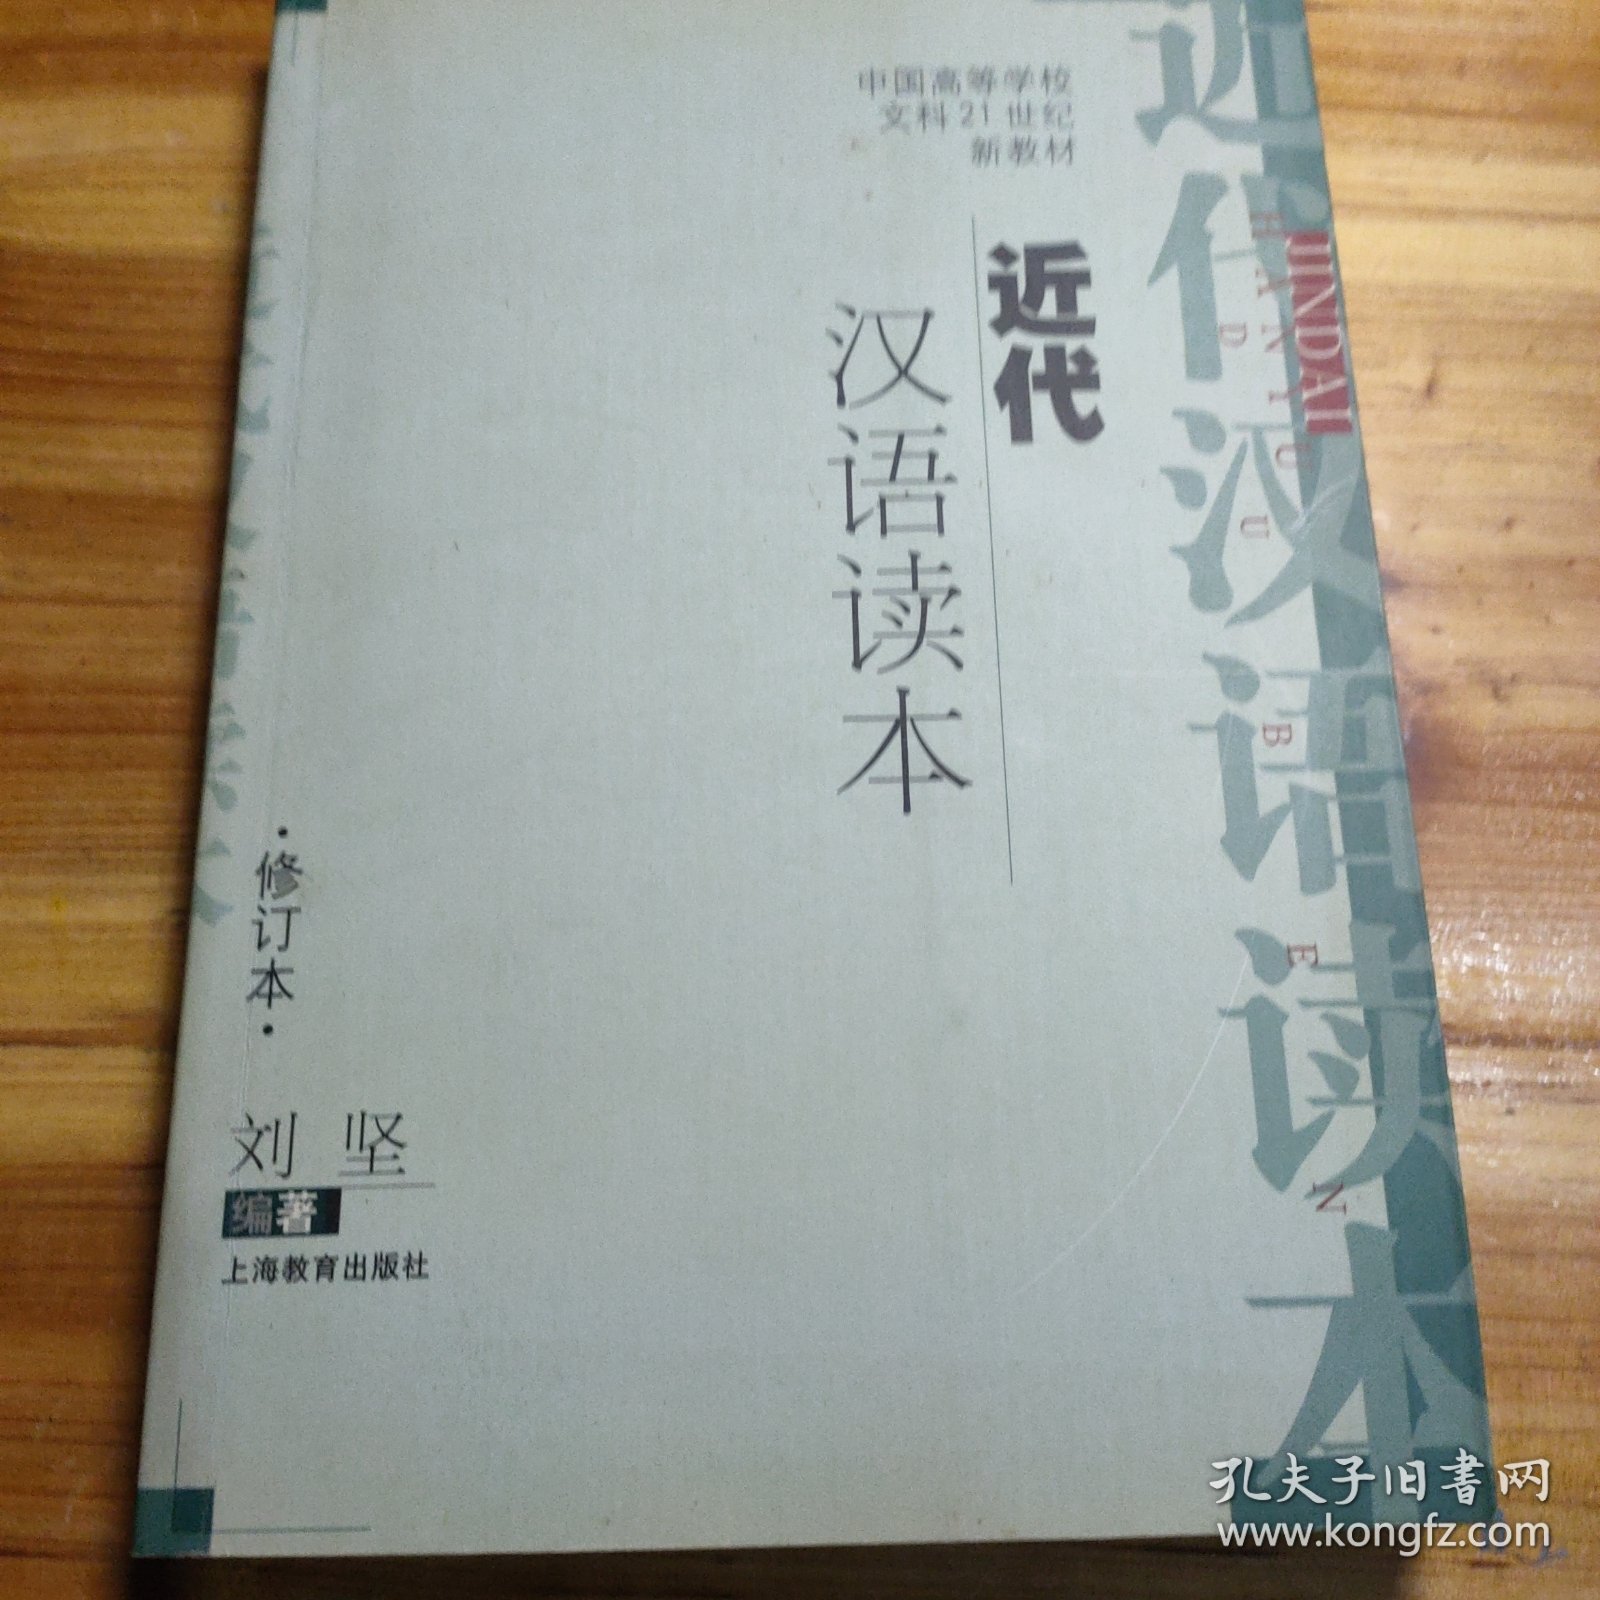 近代汉语读本